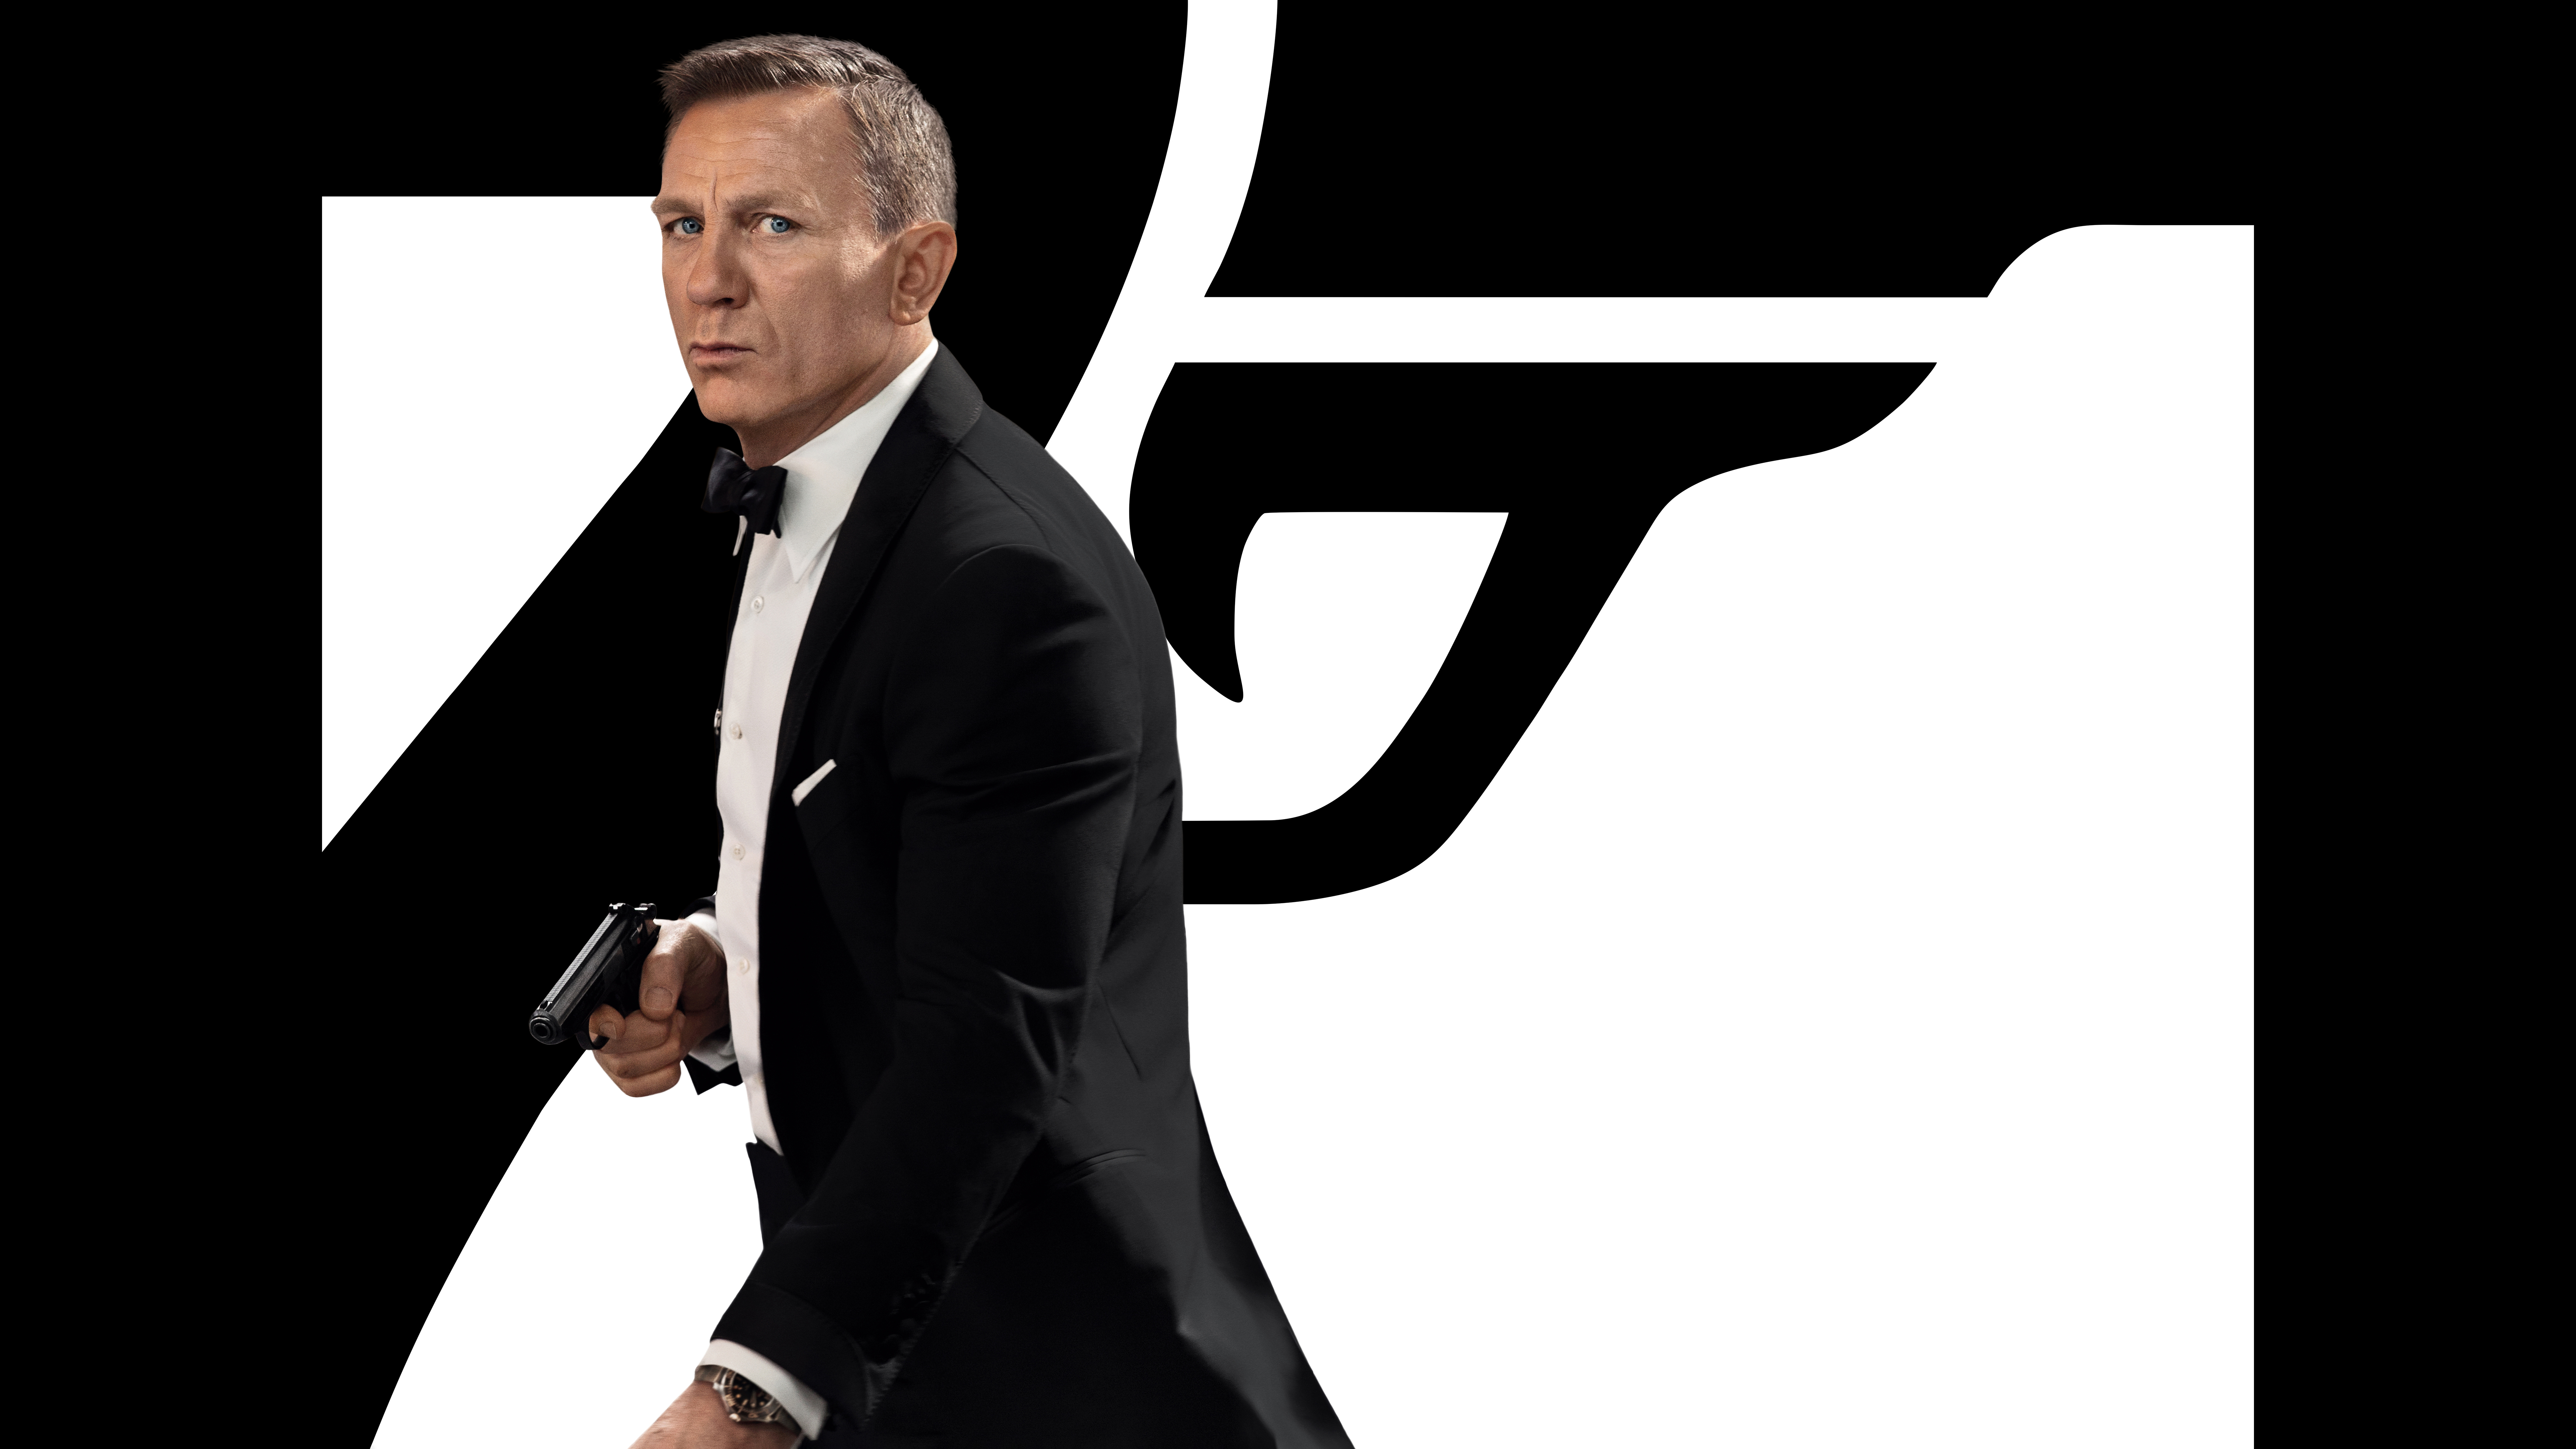 4K James Bond Wallpaper and Background Image